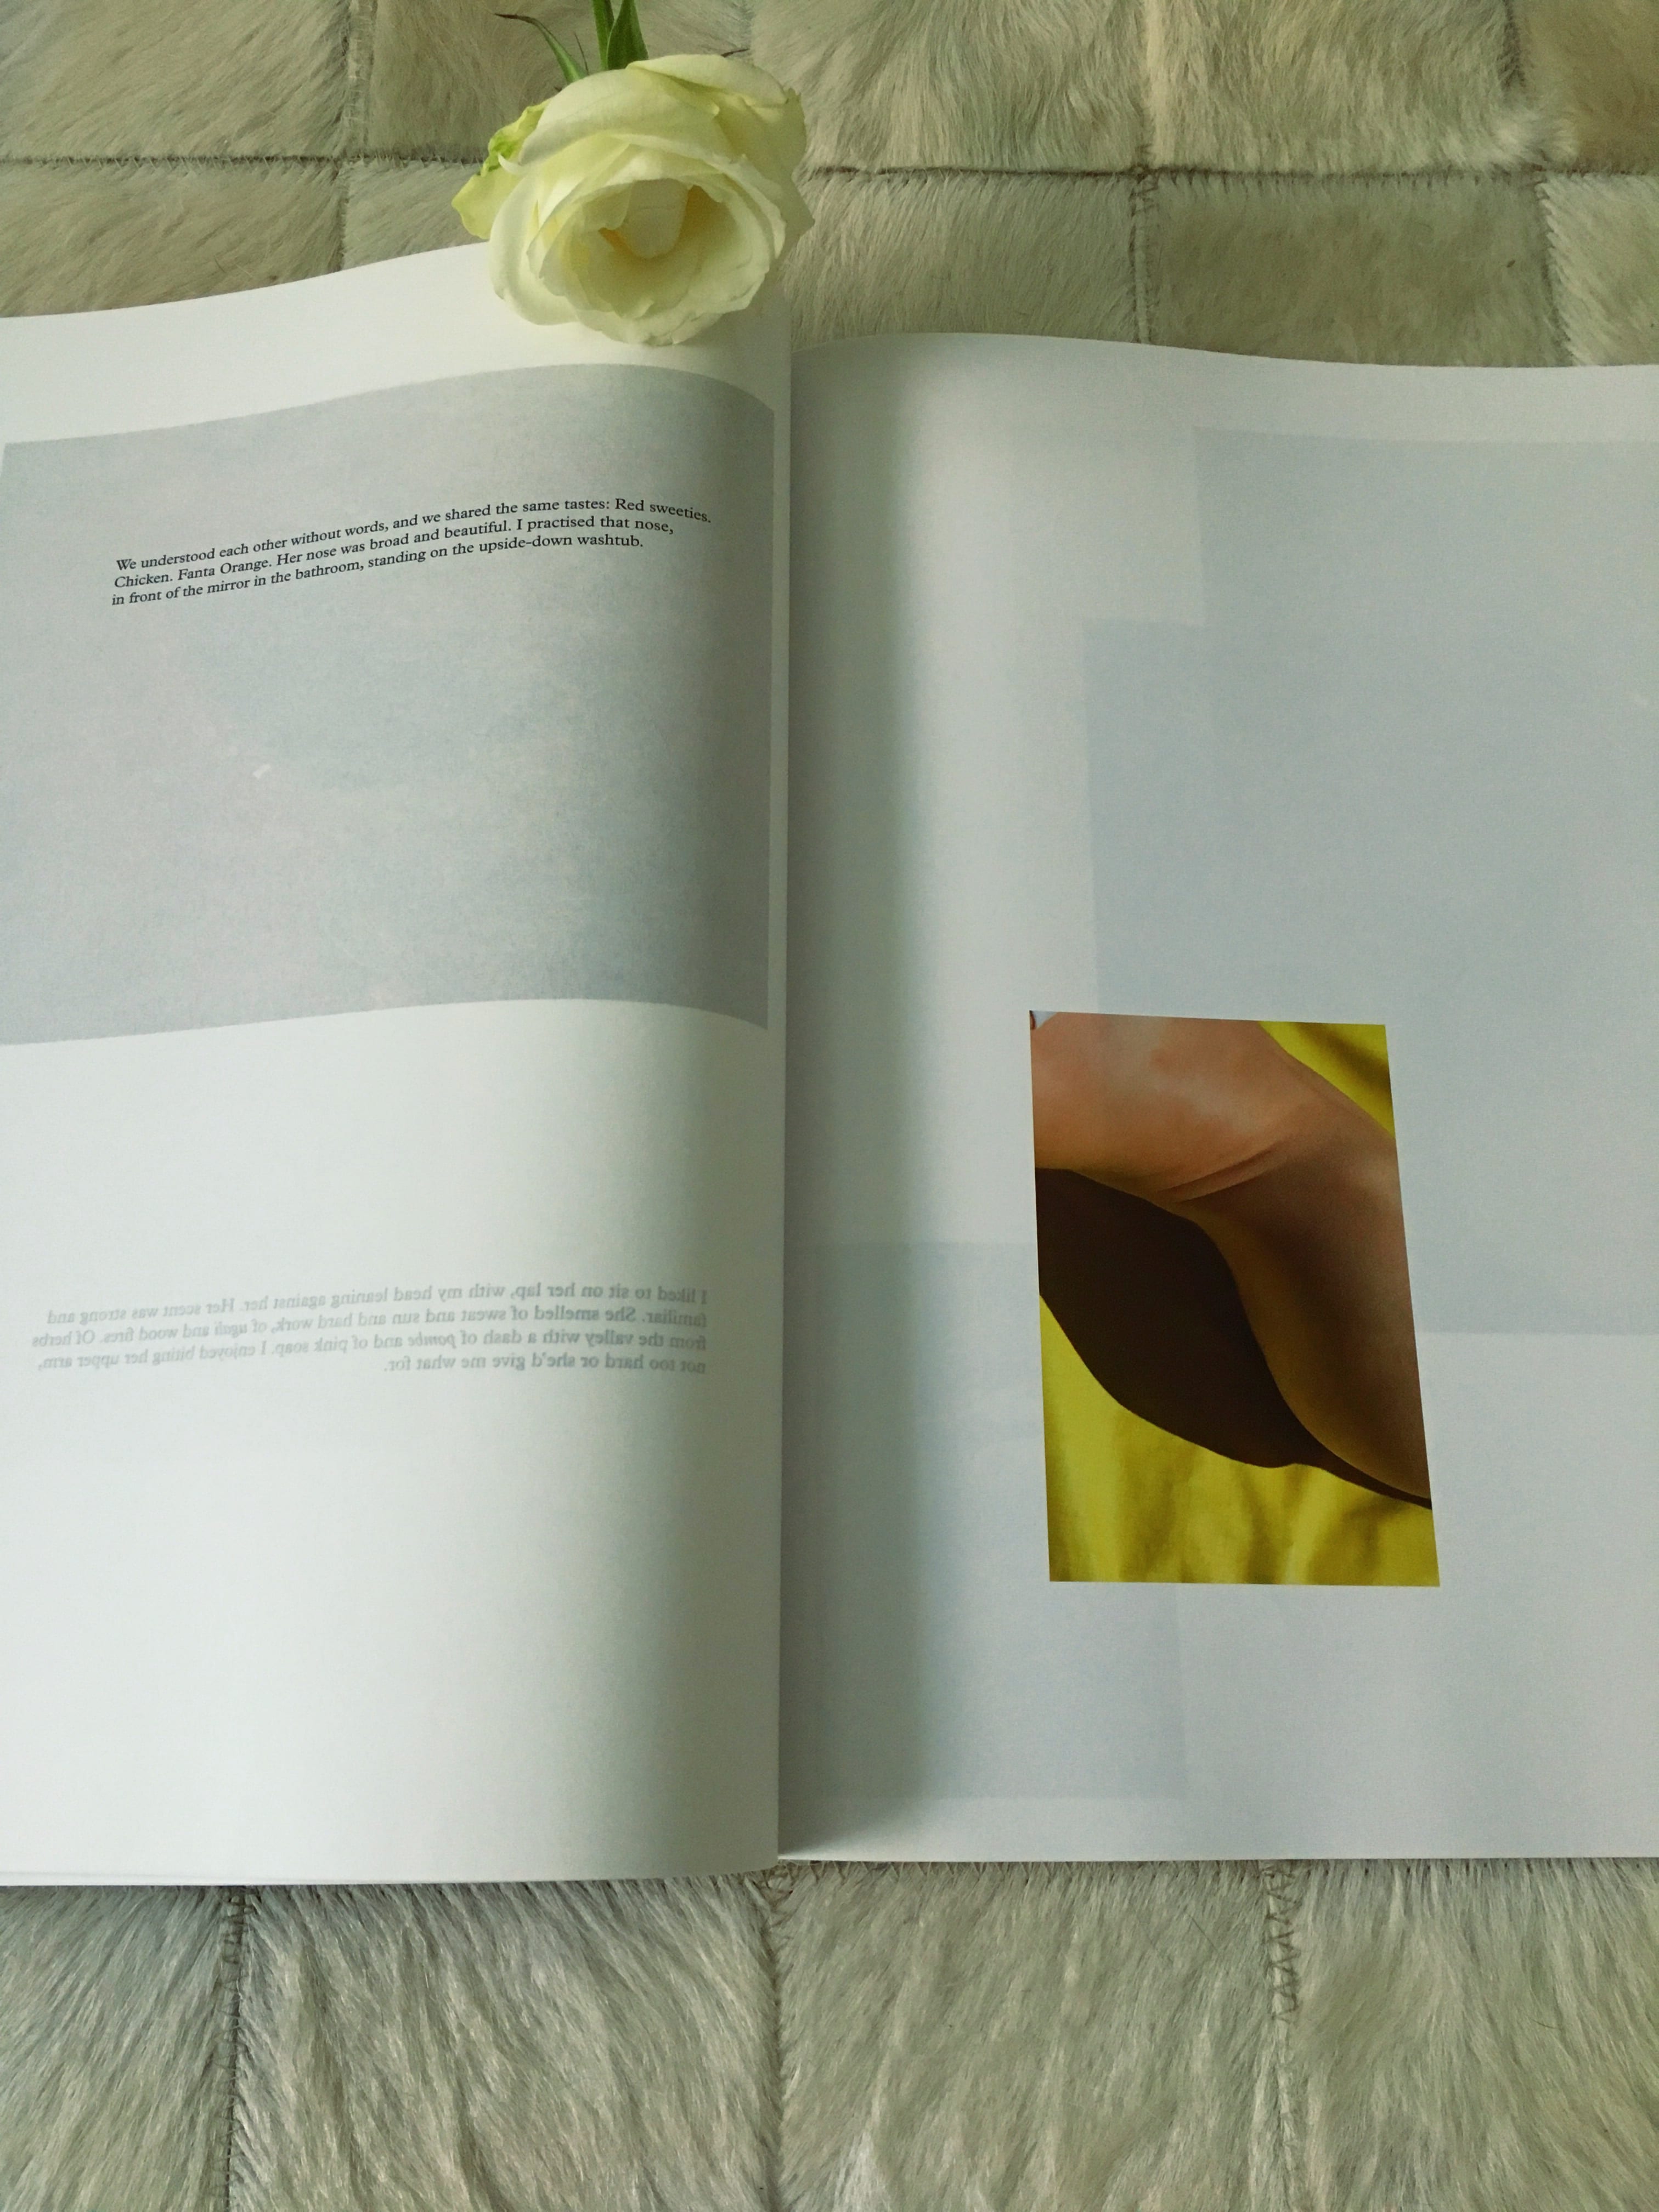 Hot Mirror von Viviane Sassen verbindet Fotokunst mit Gedichten.Sie ist eine der meistgefragten Fotokünstlerinnen ihrer Generation, die ich hier näher zeige